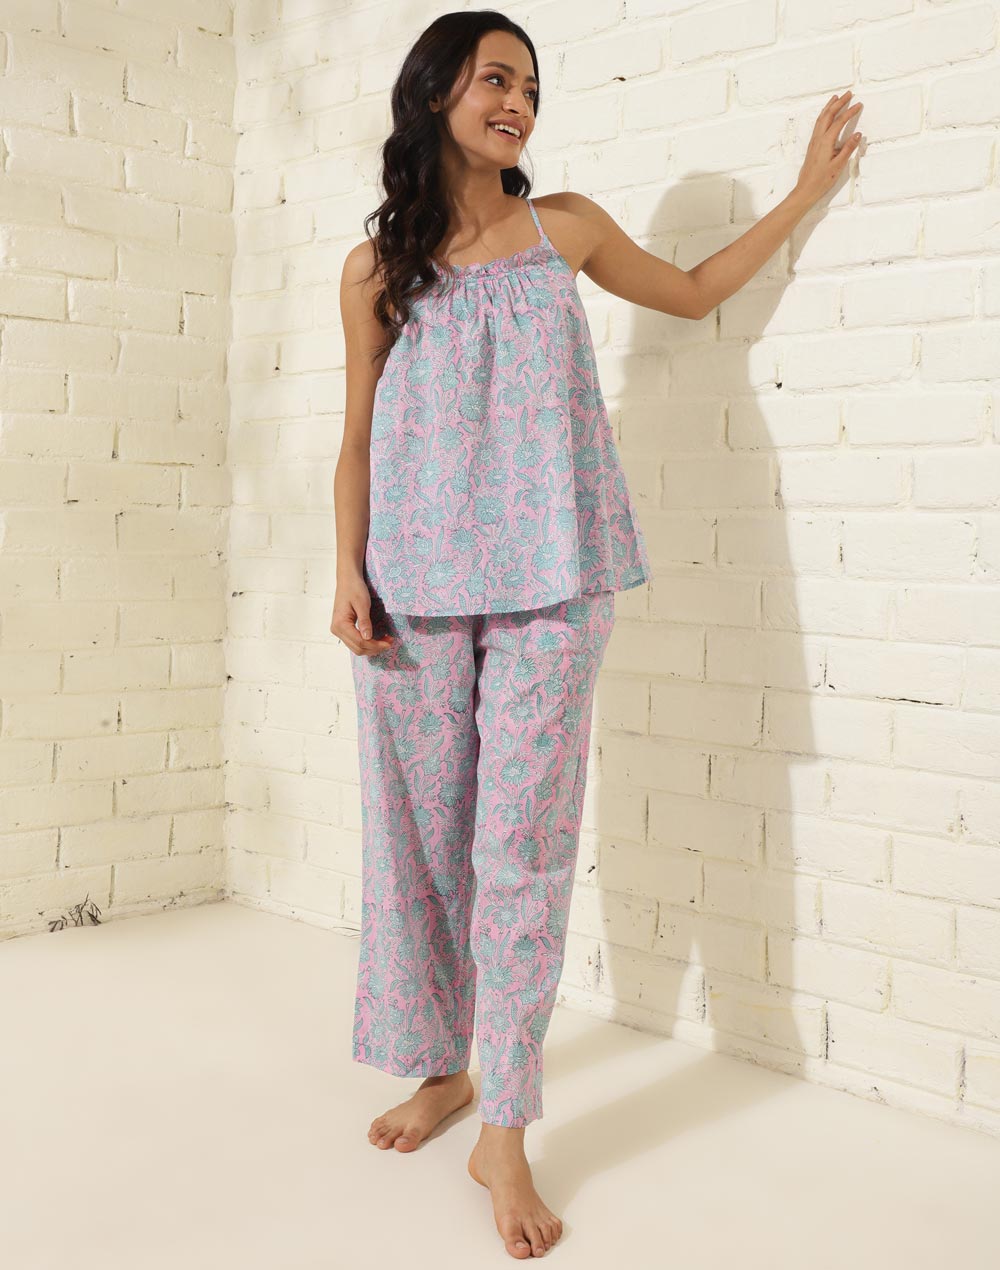 Women's Sleepwear and Pajamas